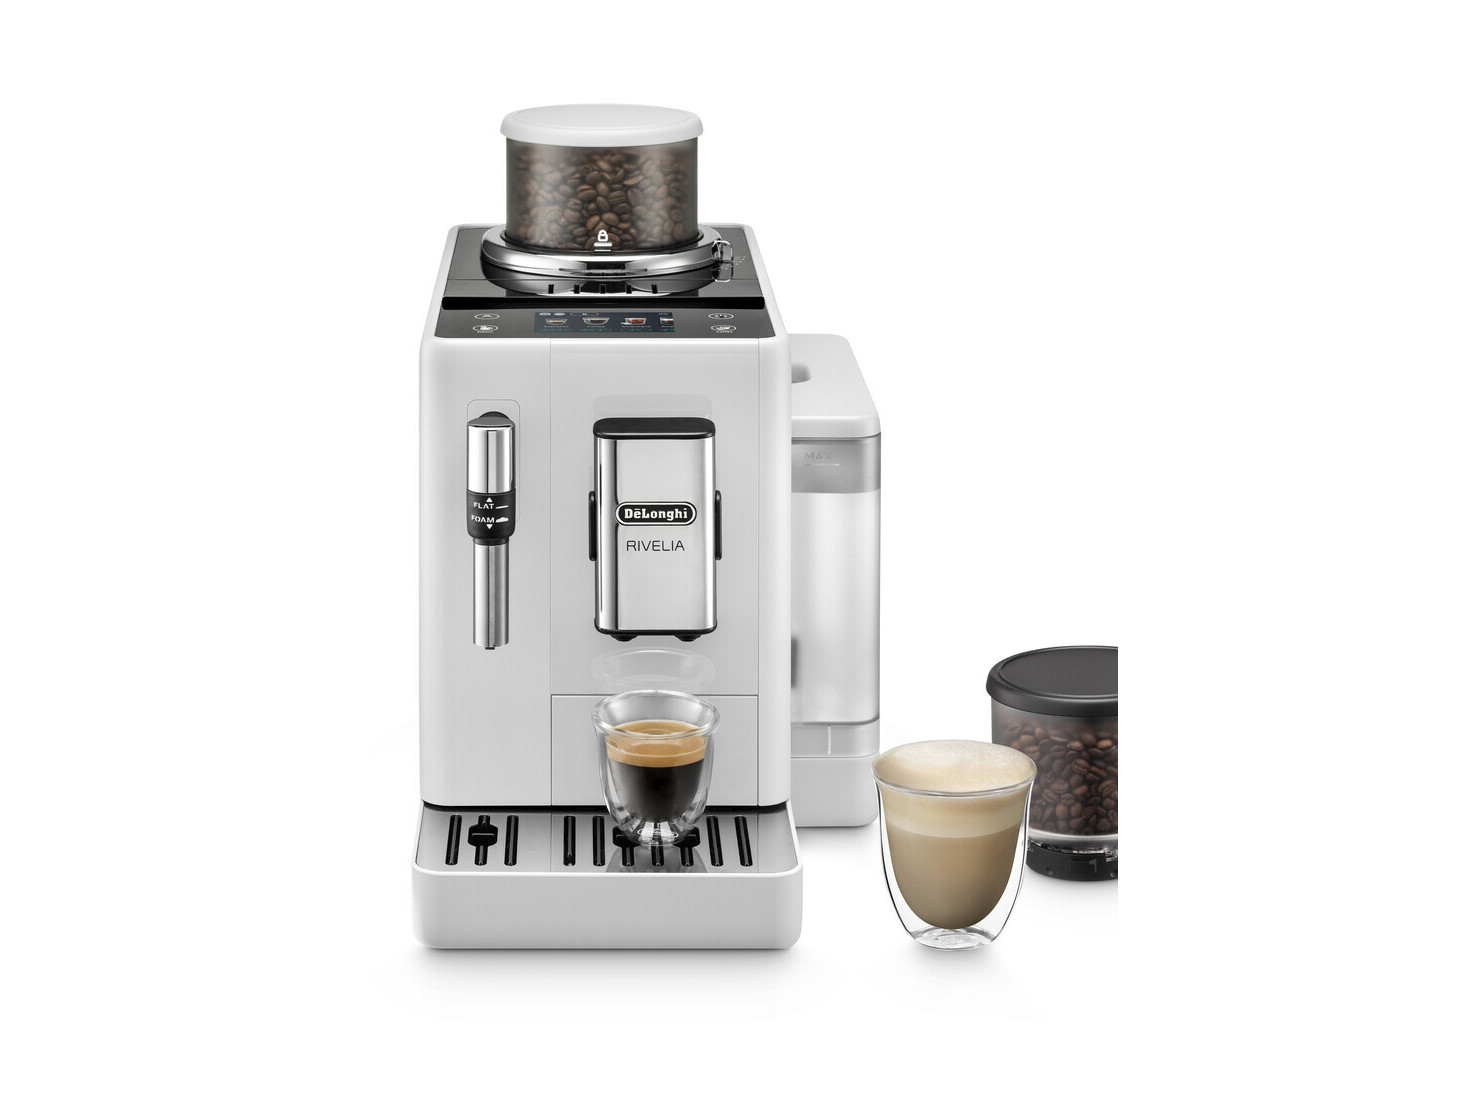 DeLonghi - Máquina digital automática de capuchino, café con leche,  macchiato y espresso